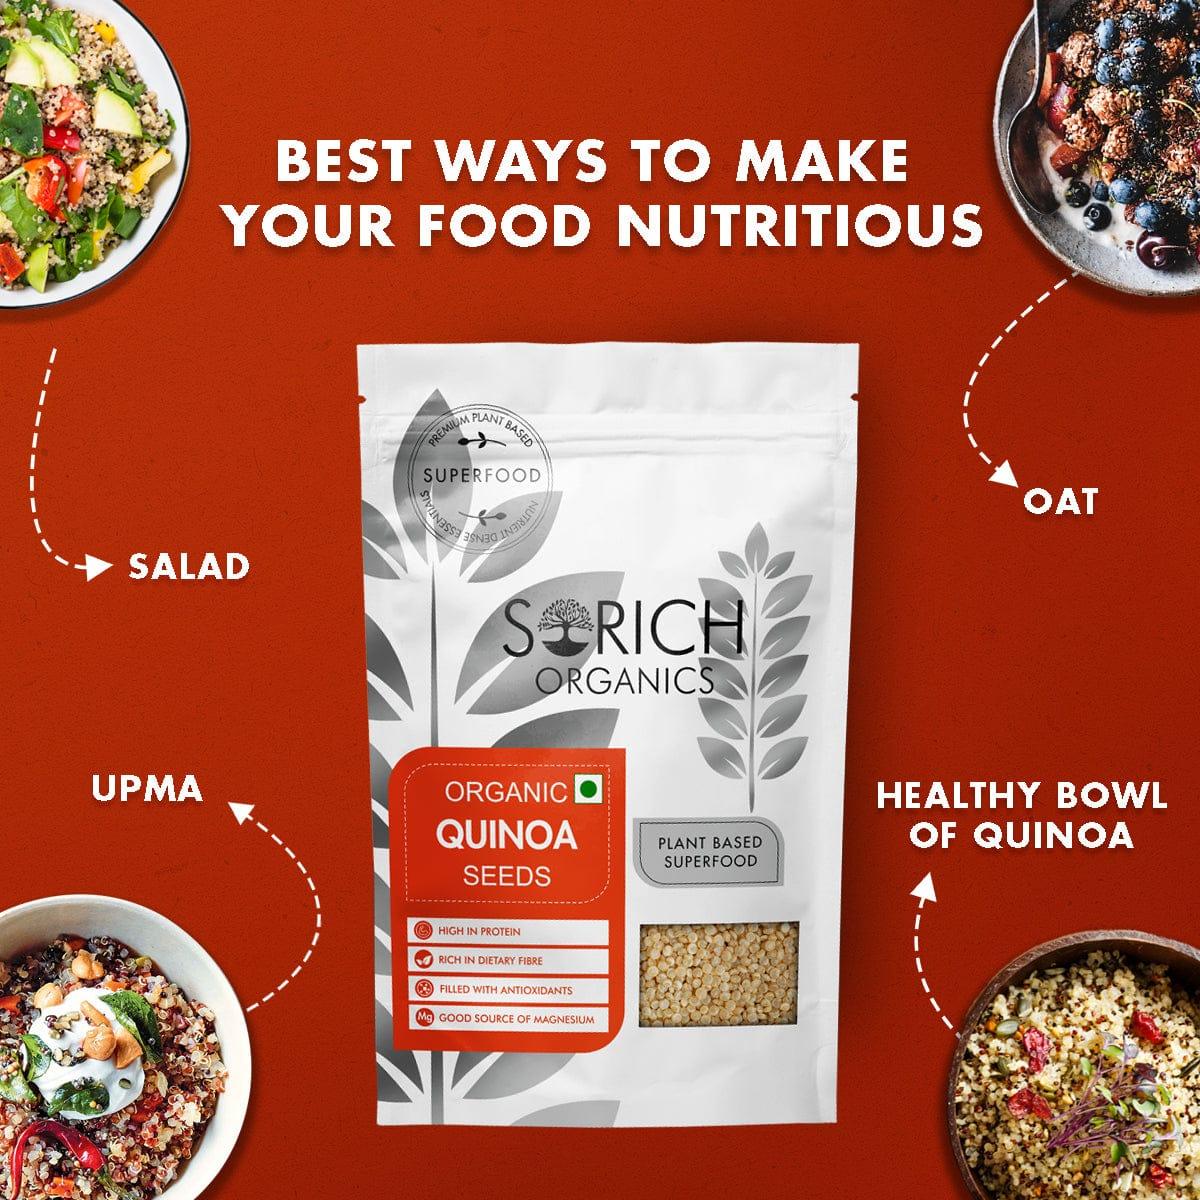 quinoa seed uses